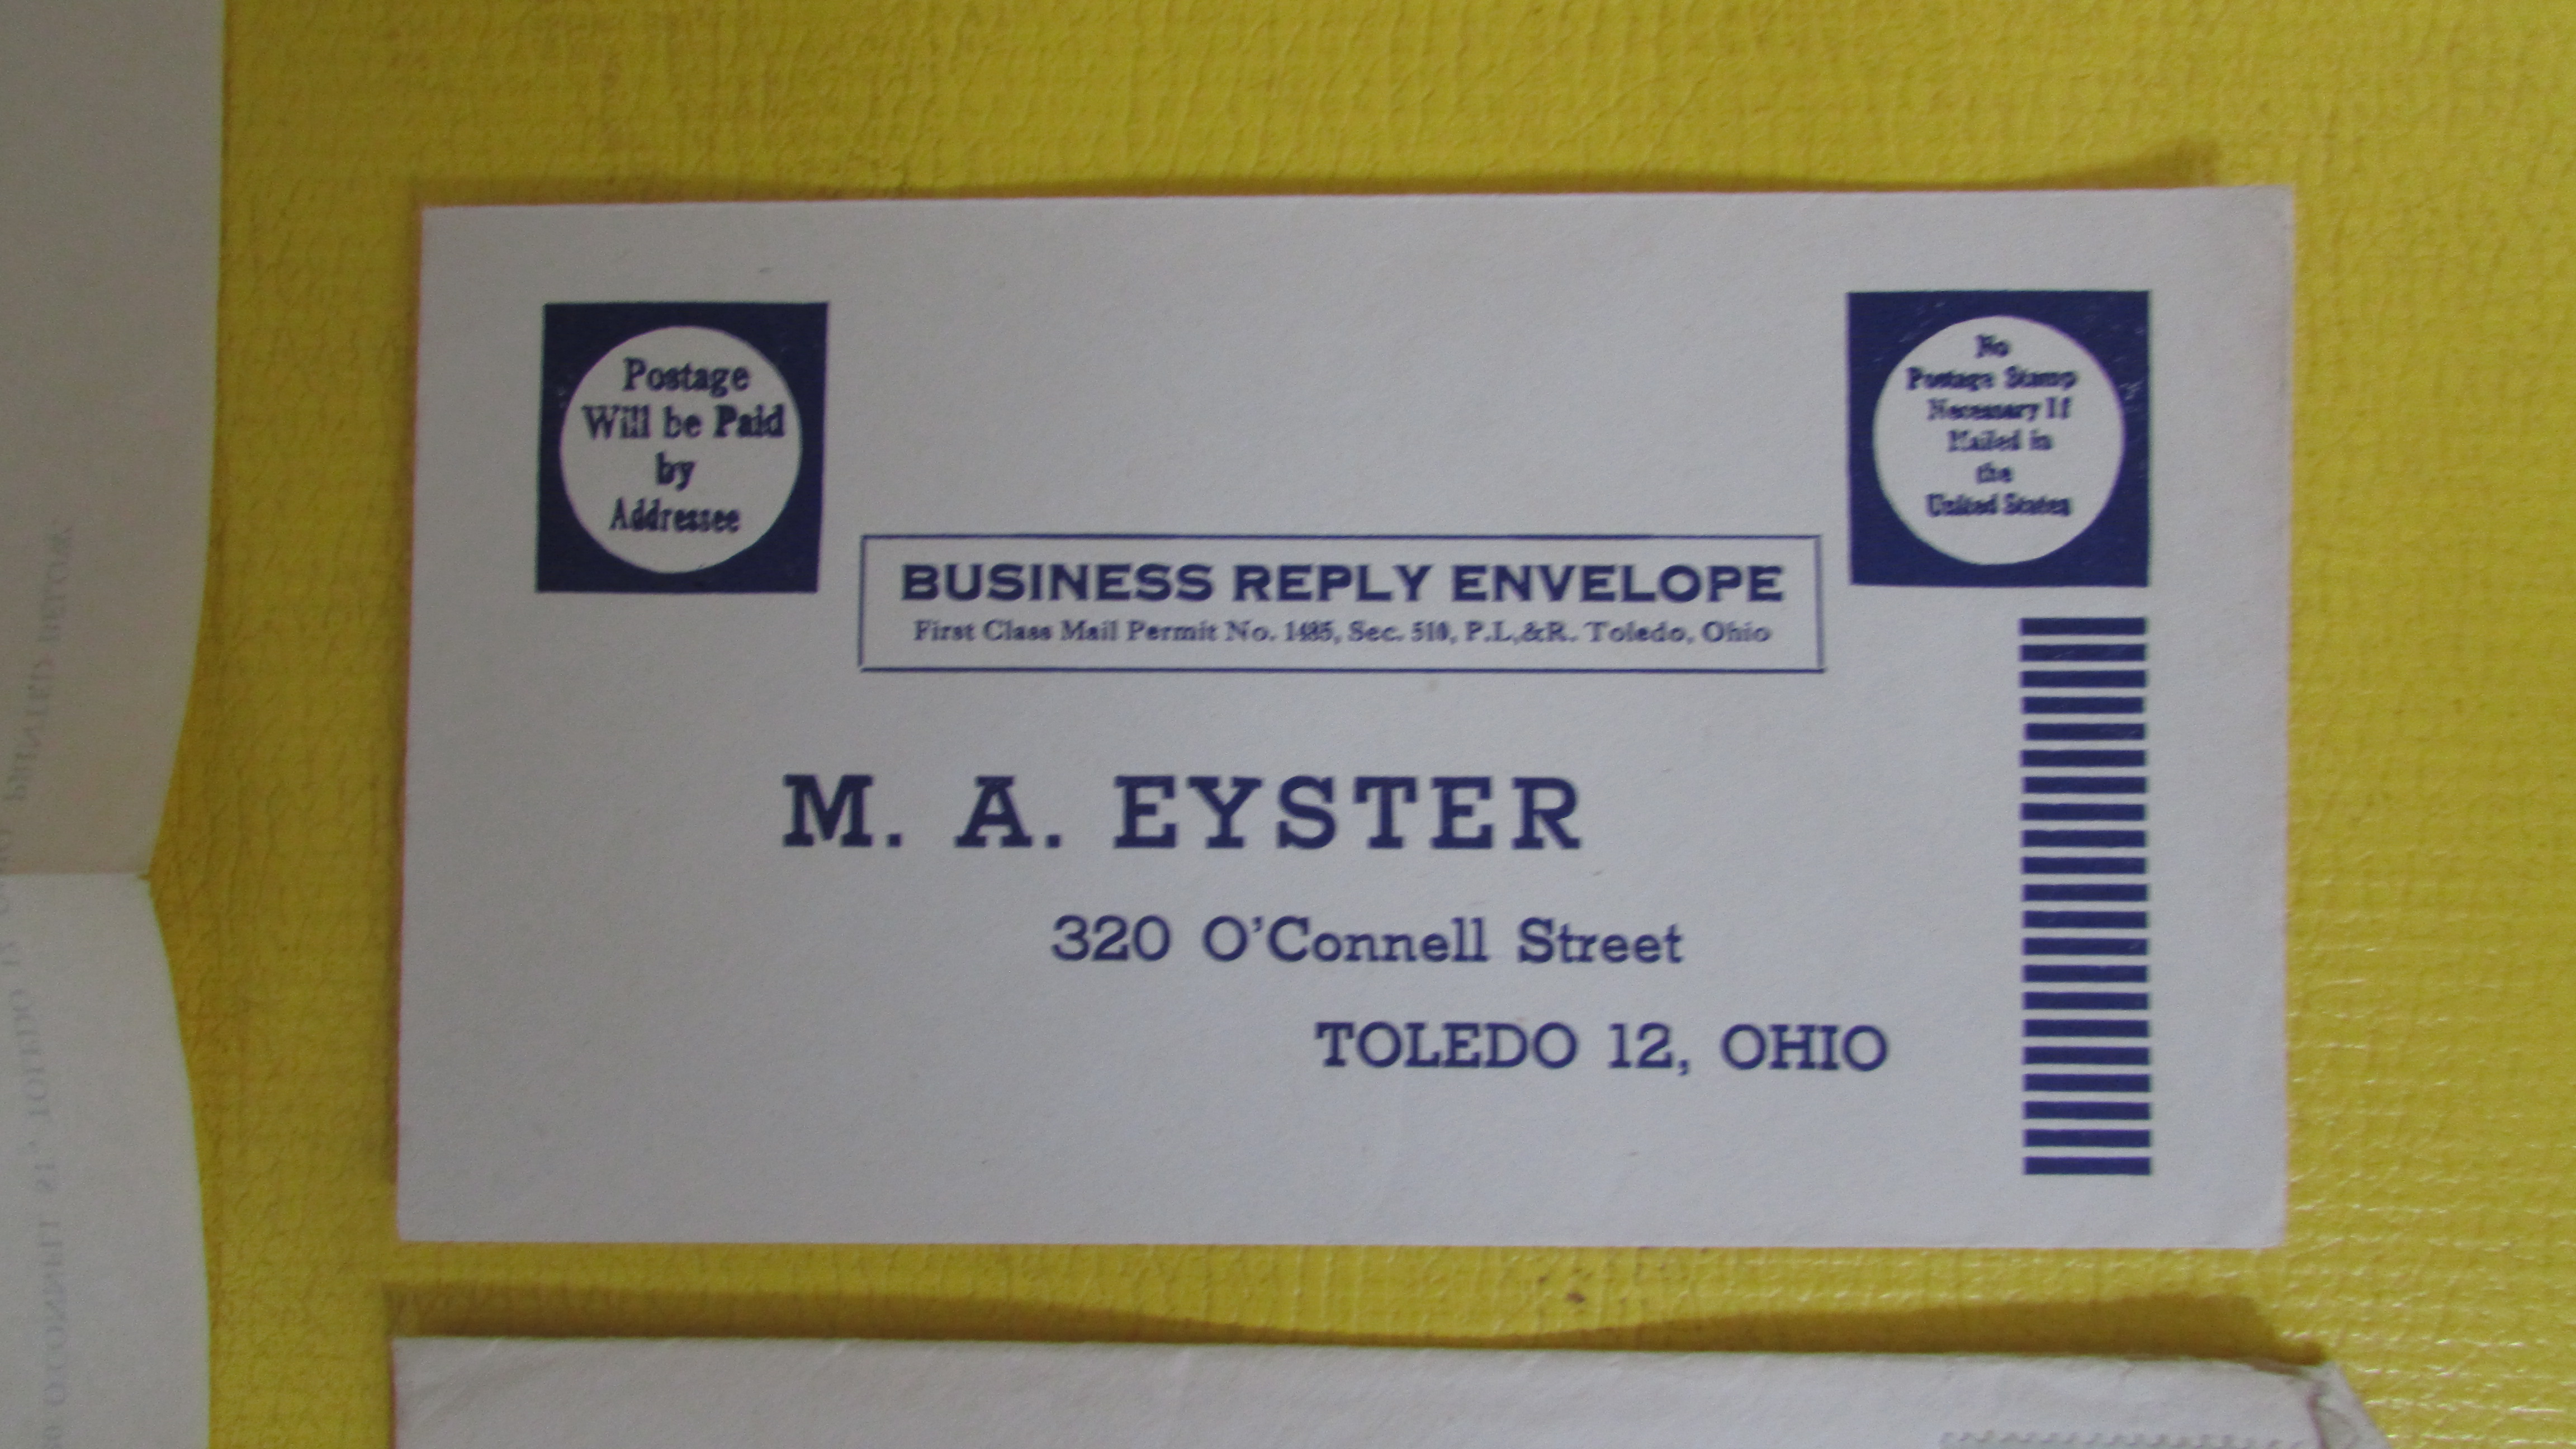 Return envelope from 1948 letter